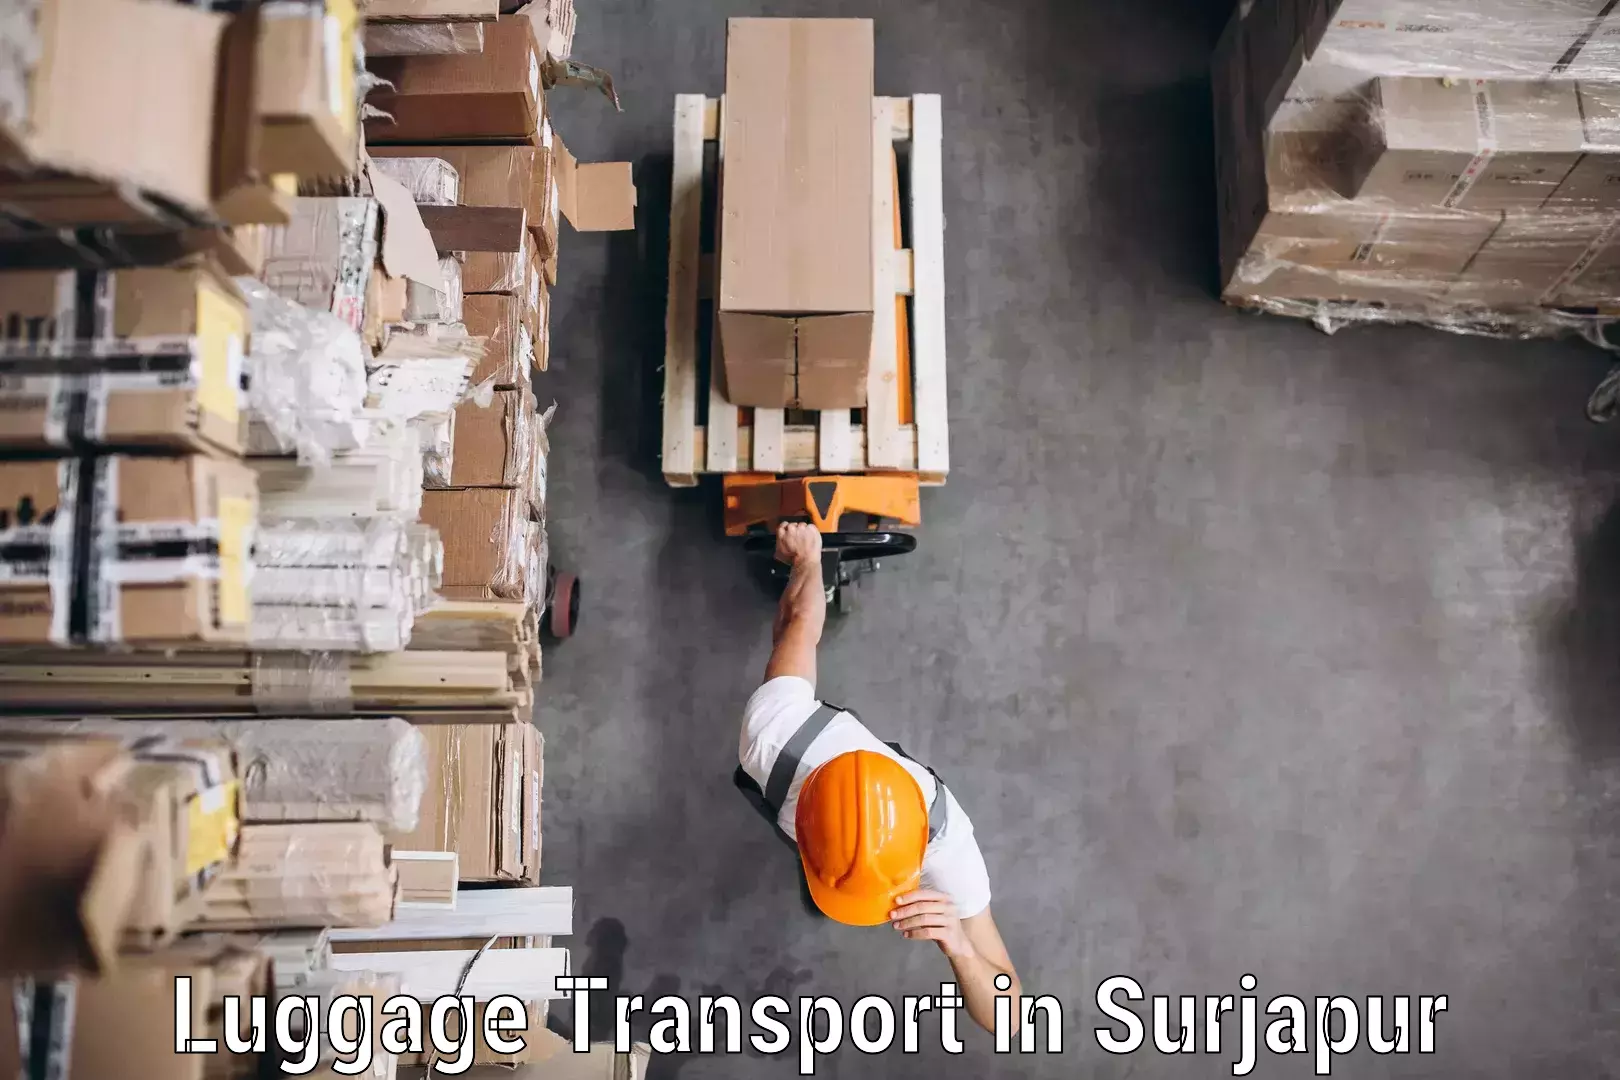 Baggage transport management in Surjapur